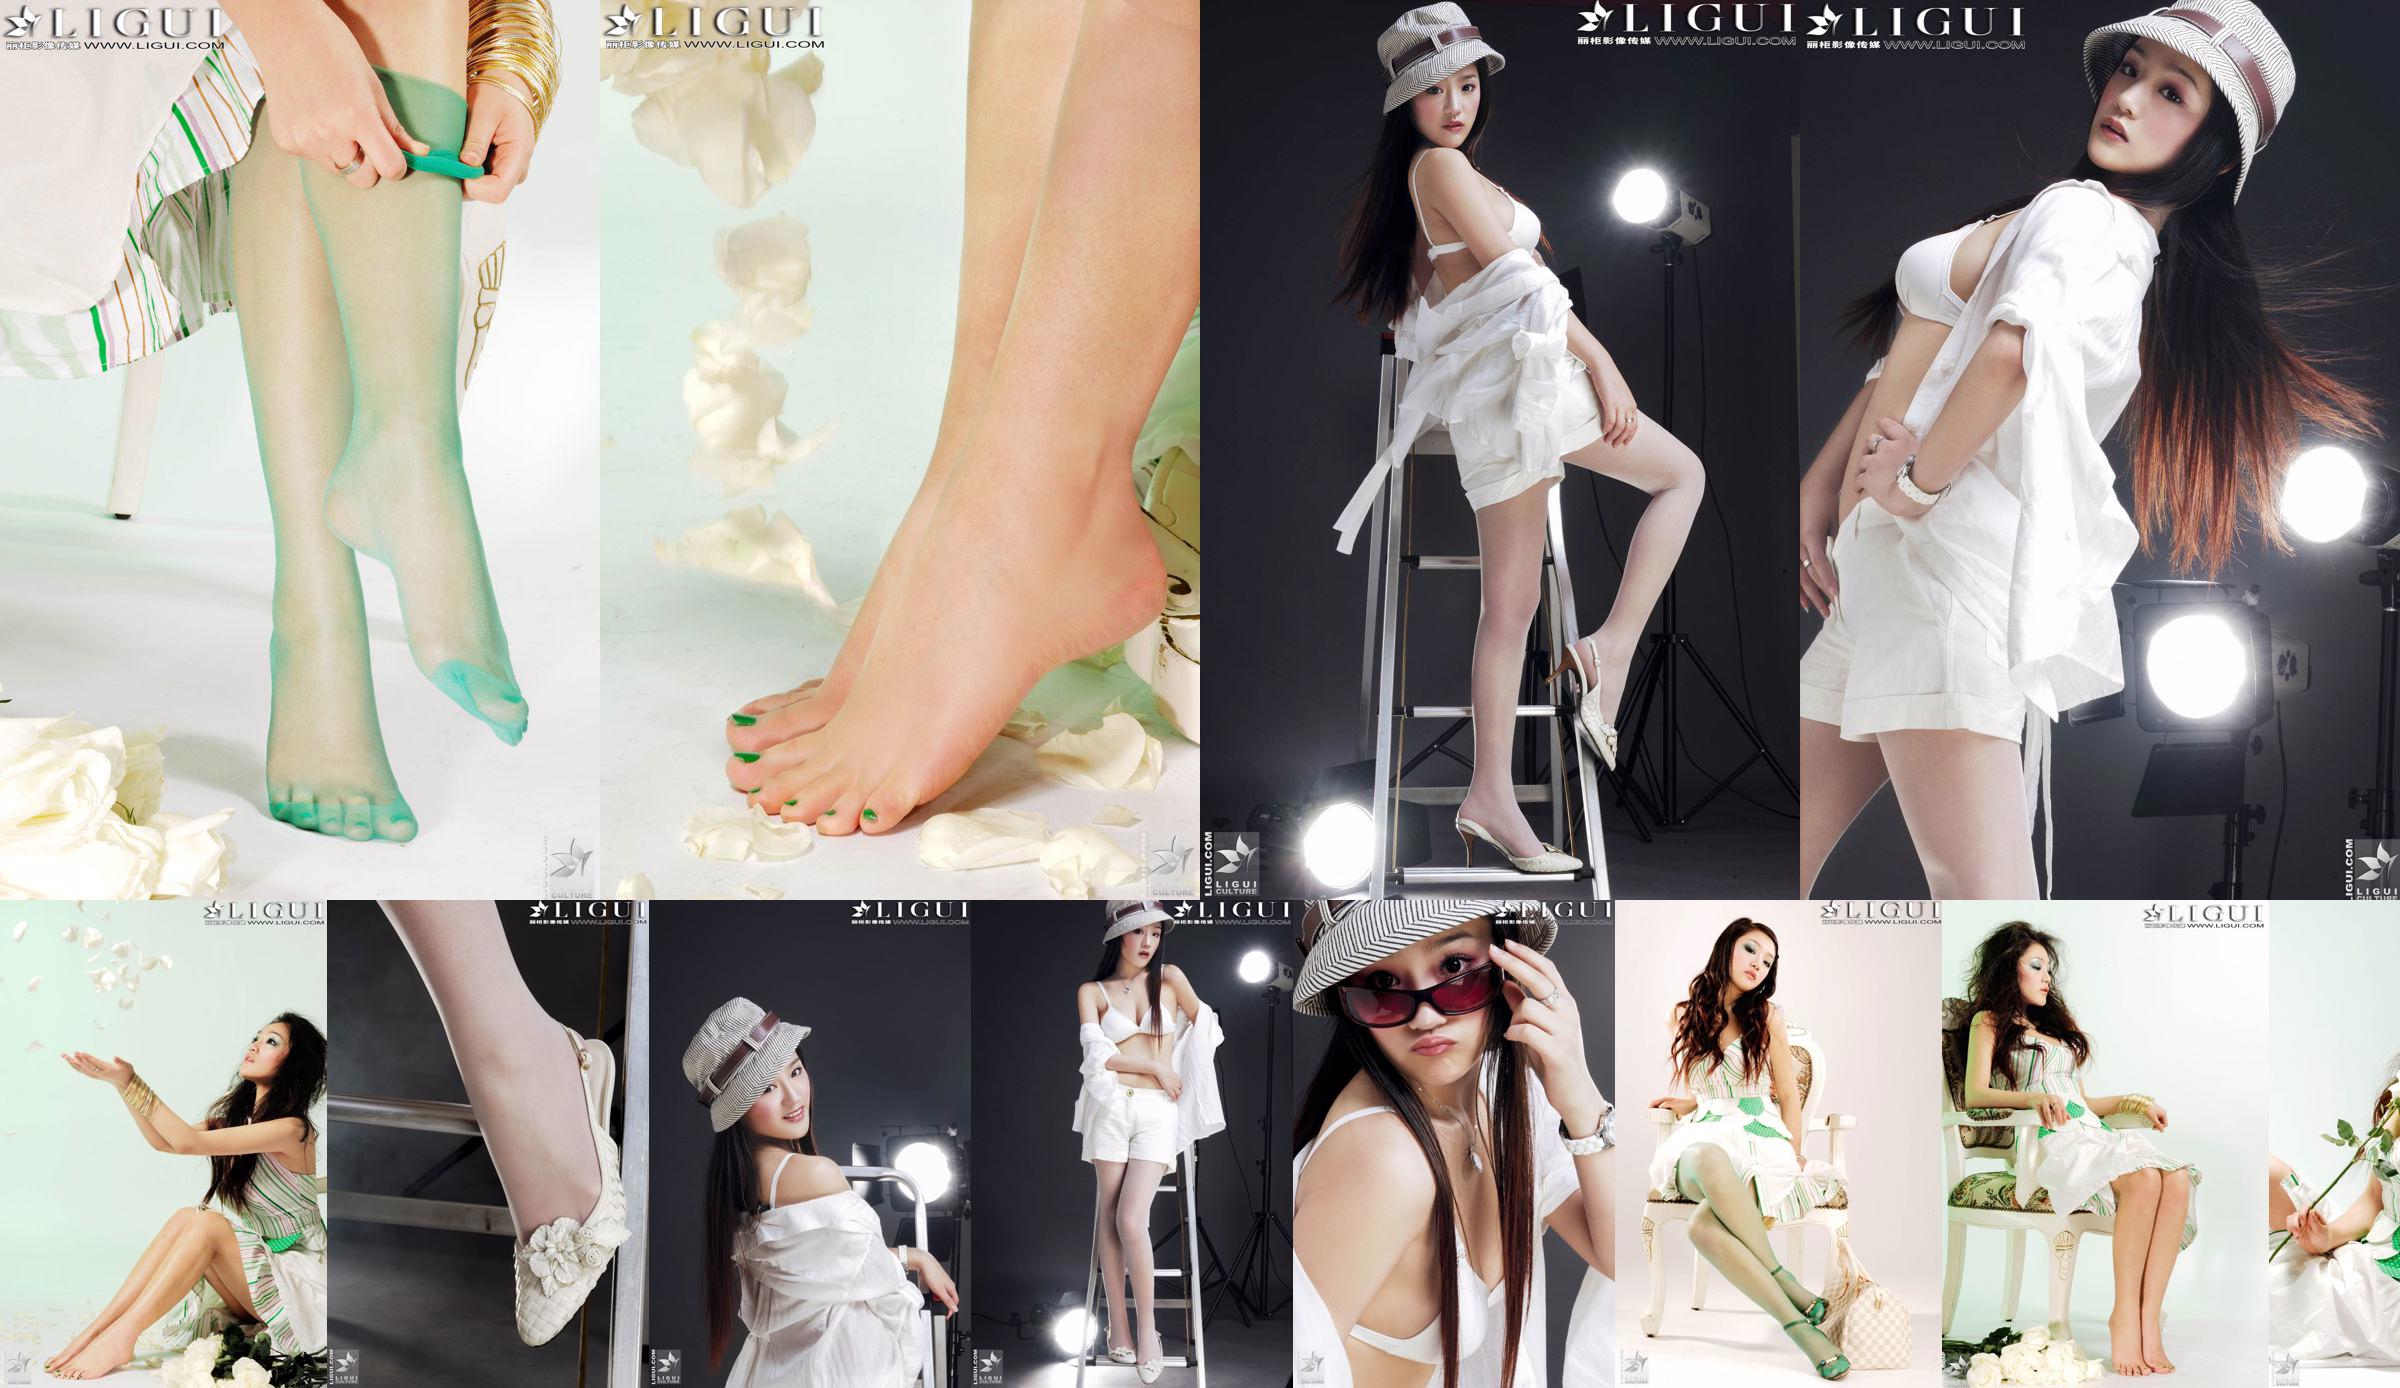 [丽 柜 贵 Fuß LiGui] Model Zhang Jingyans "Modischer Fuß" -Foto von schönen Beinen und Seidenfüßen No.ec70ad Seite 13